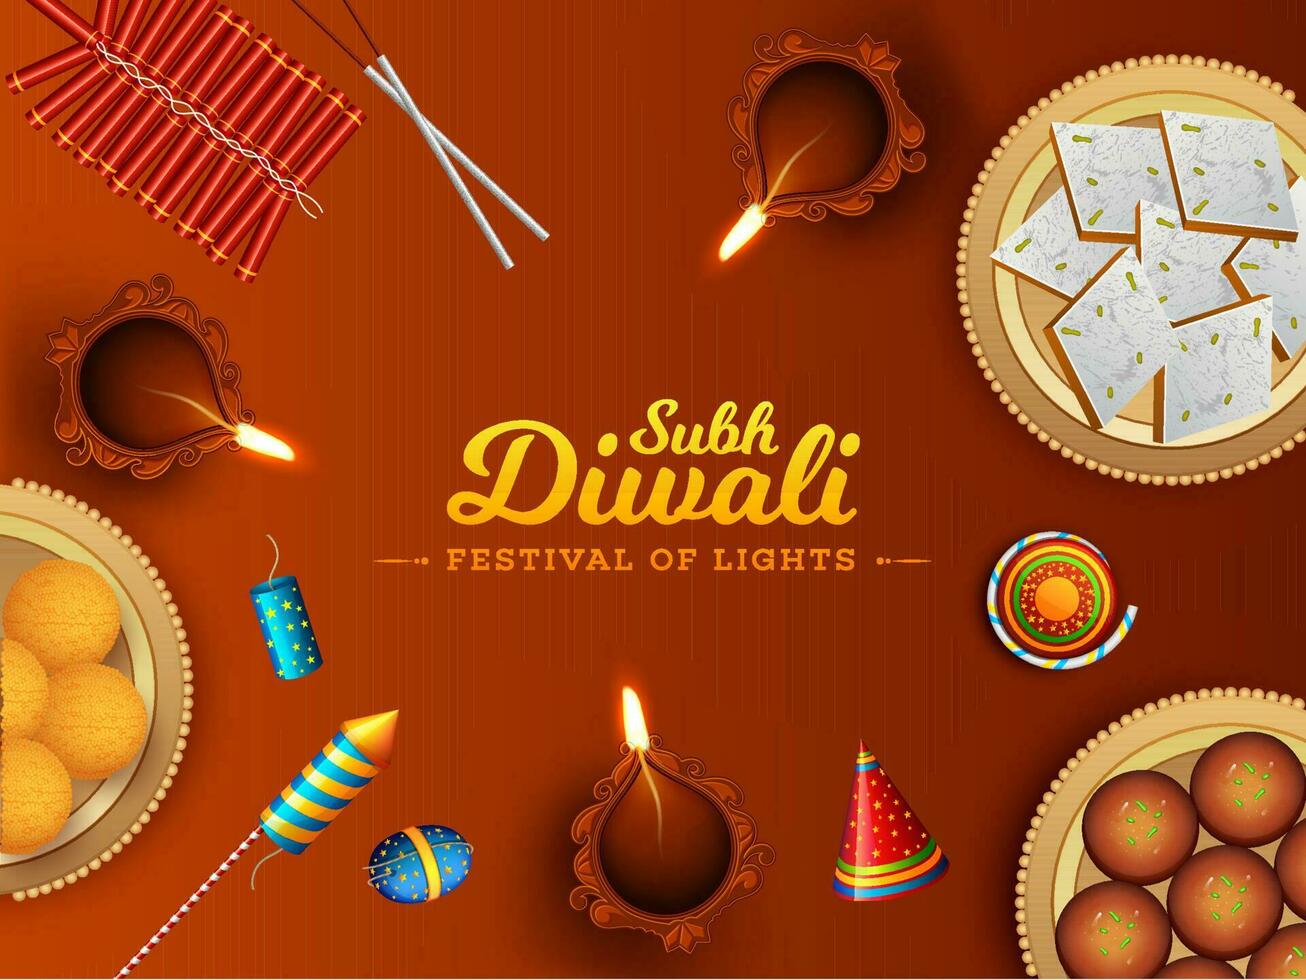 topp se av sötsaker med smällare och upplyst olja lampa dekorerad på brun bakgrund för festival av lampor, subh diwali firande begrepp. vektor